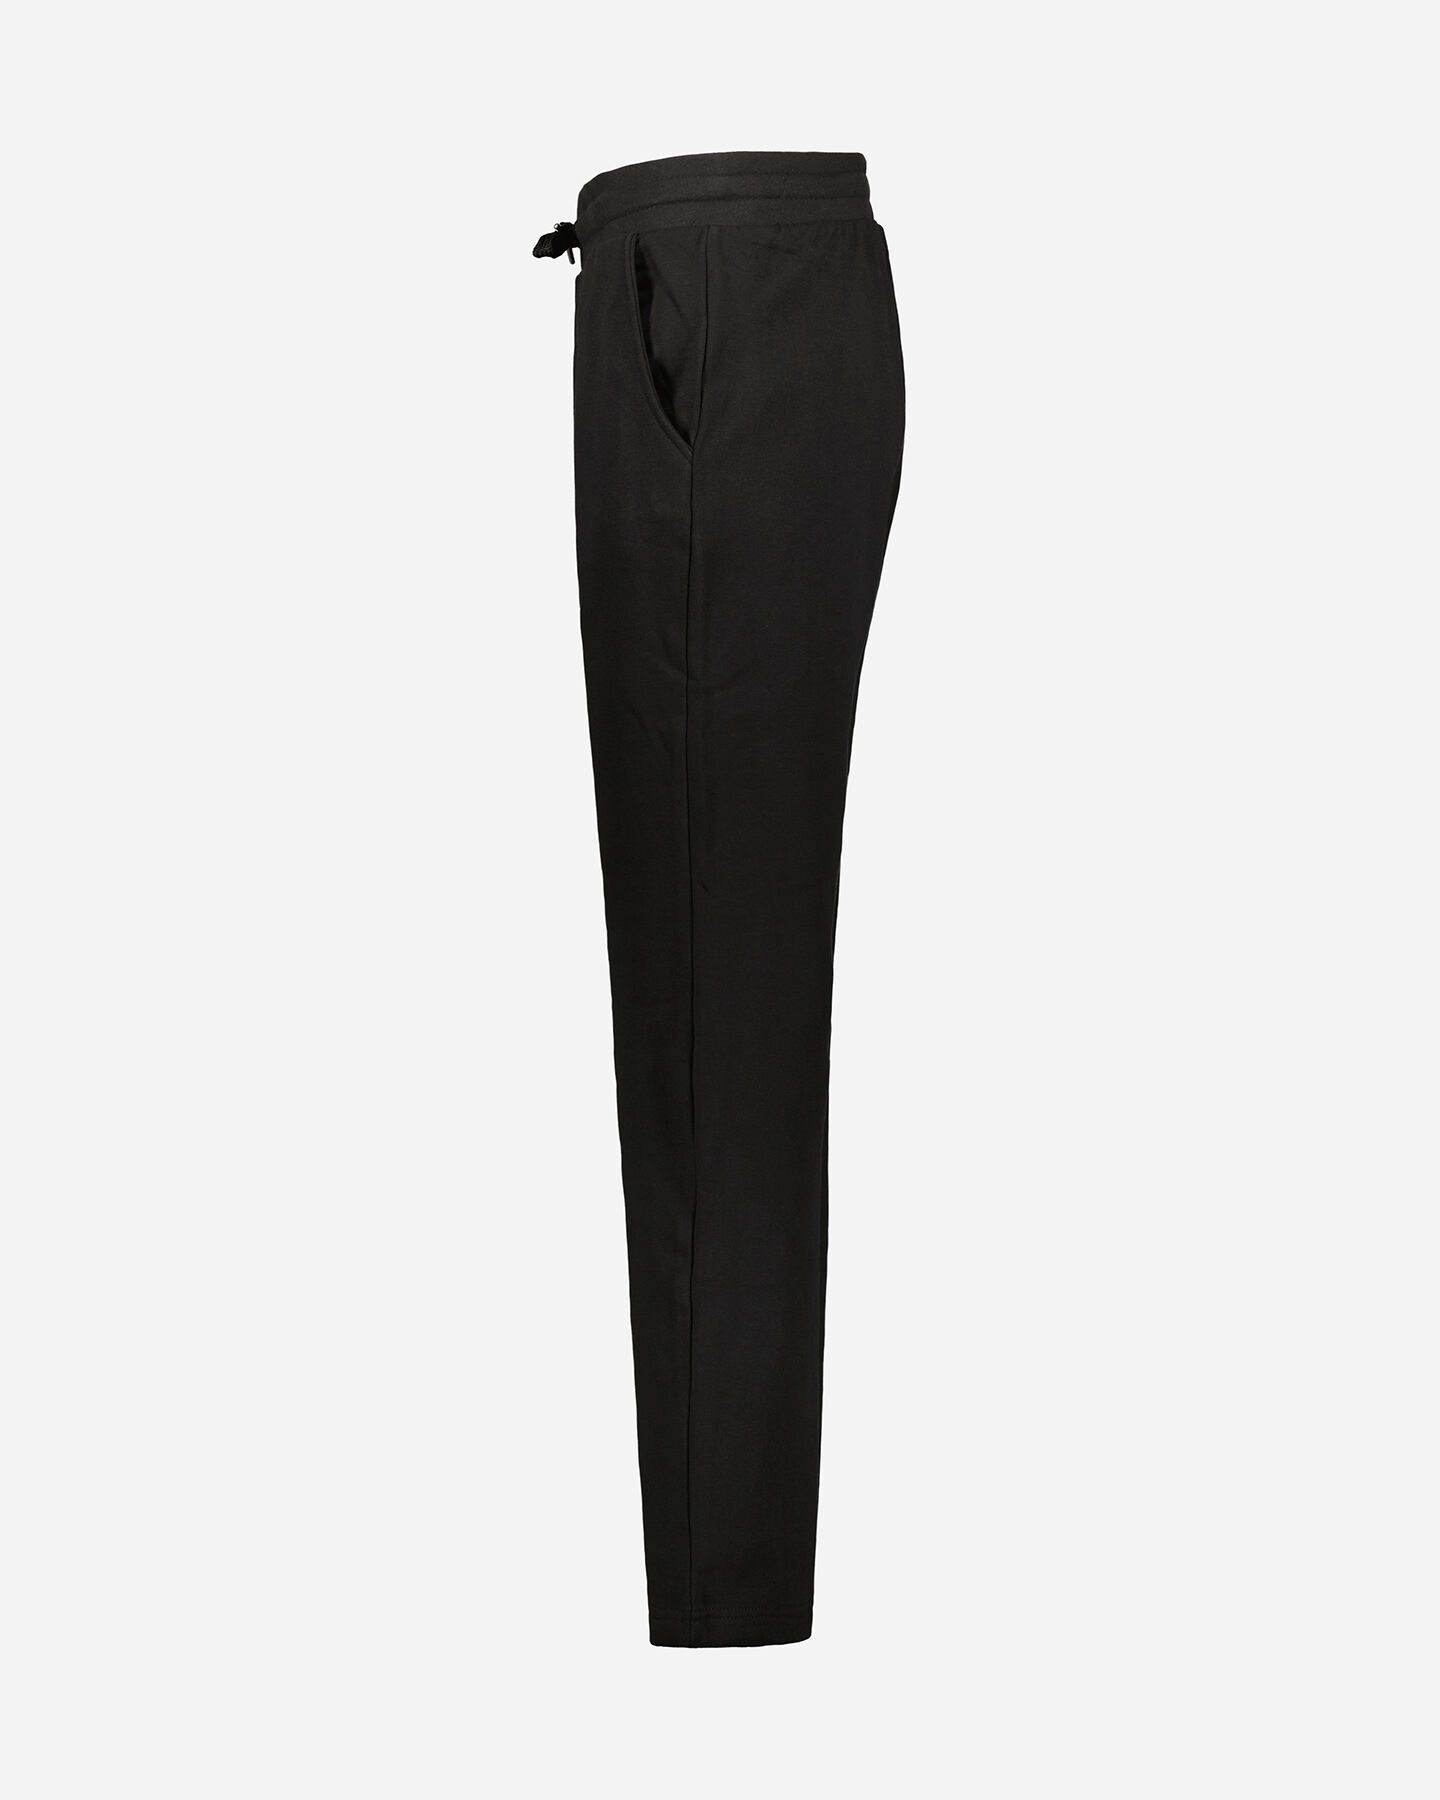  Pantalone ADMIRAL CLASSIC W S4106251|050|S scatto 1